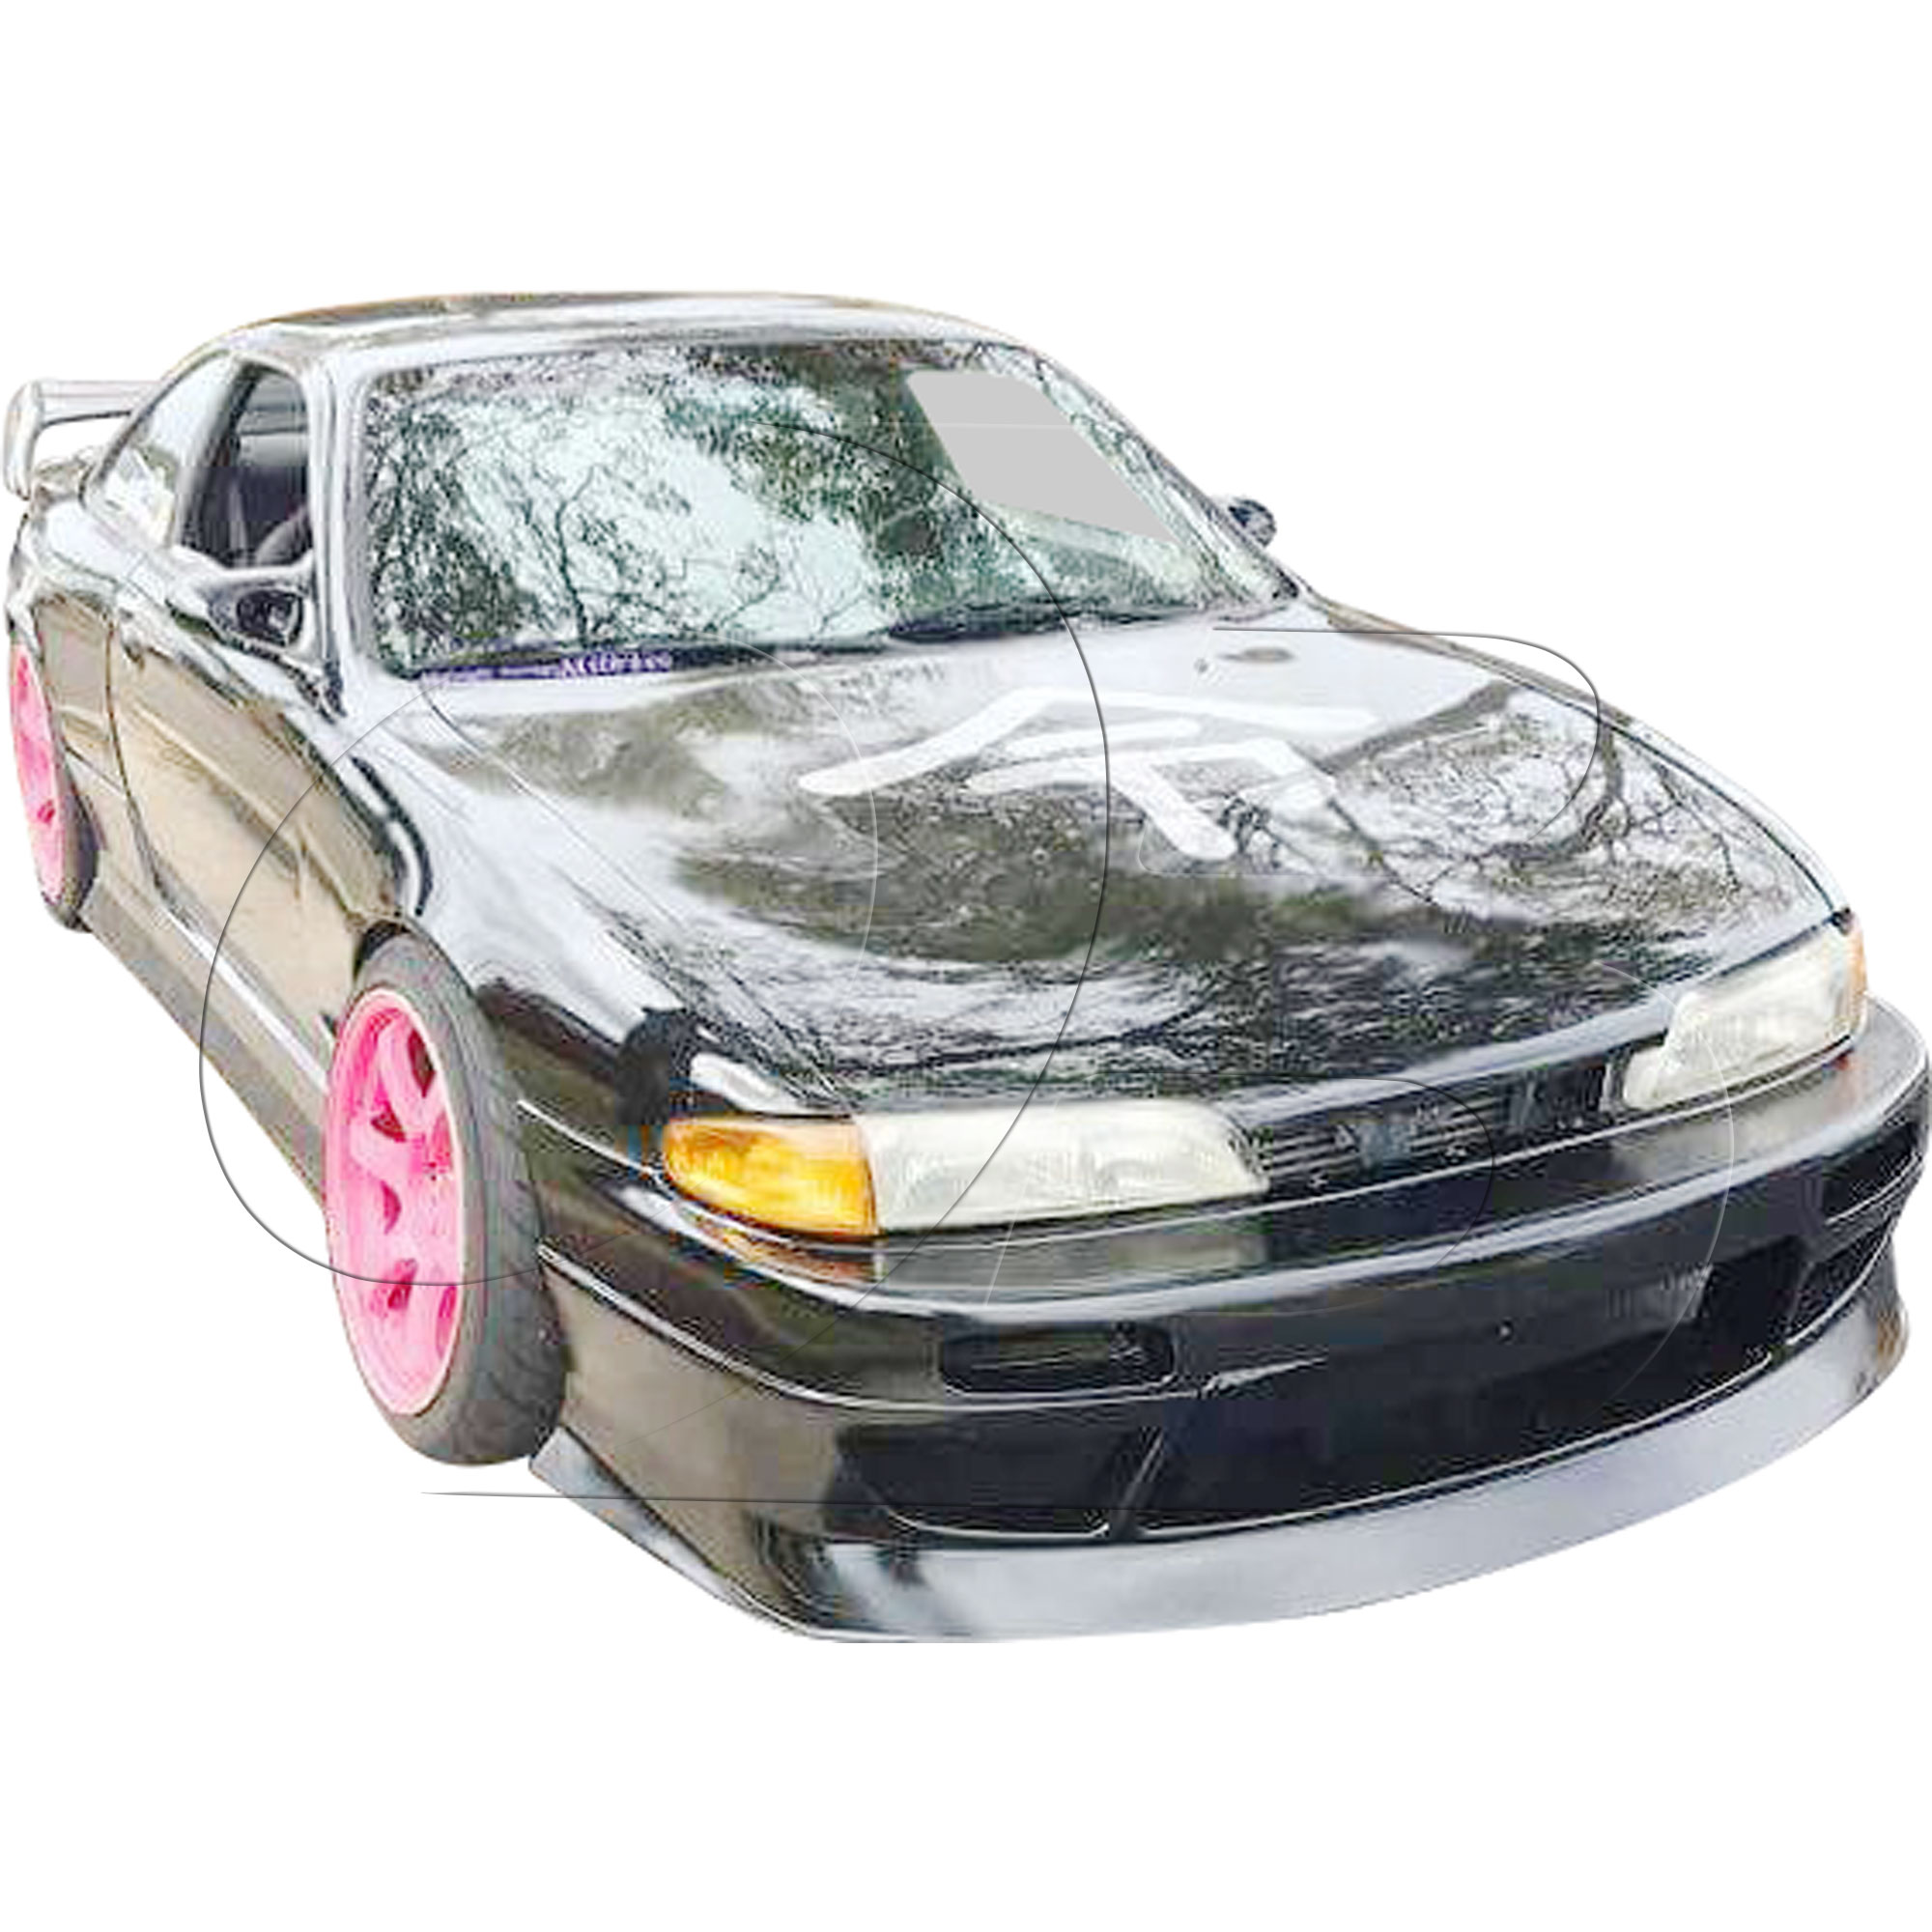 KBD Urethane DM3 Style 1pc Front Bumper > Nissan 240SX S14 1995-1996 - Image 27